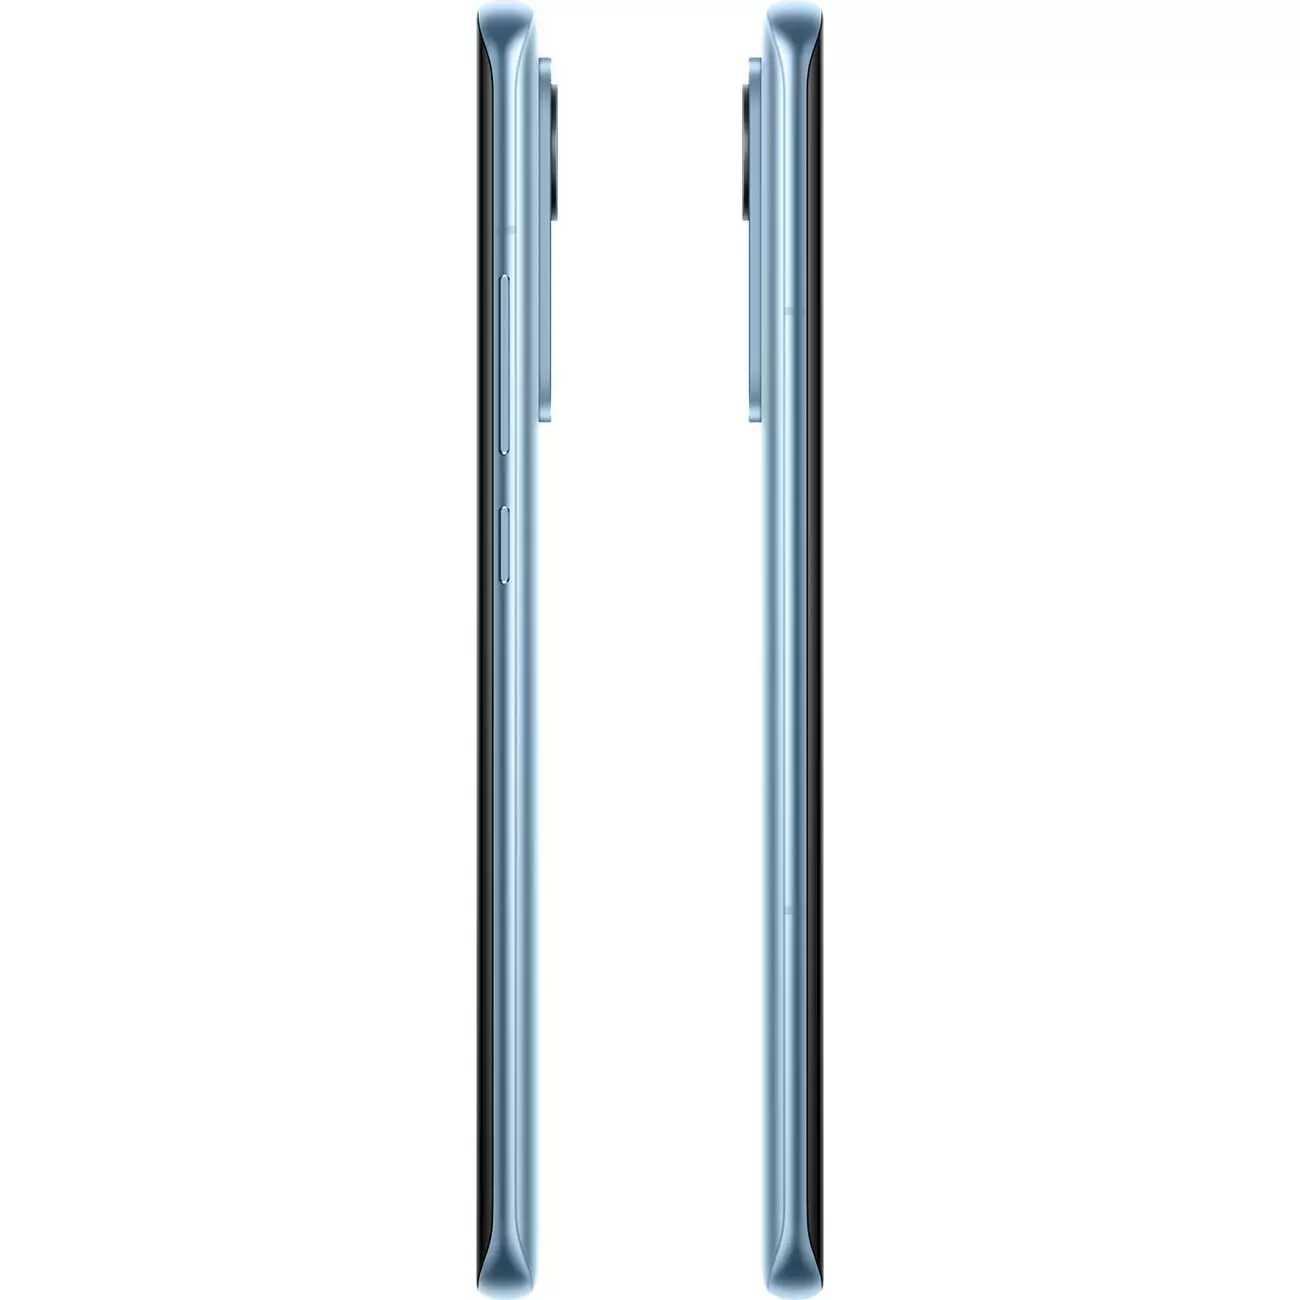 Смартфон Xiaomi 12 Pro 8/256 ГБ Синий в Челябинске купить по недорогим ценам с доставкой